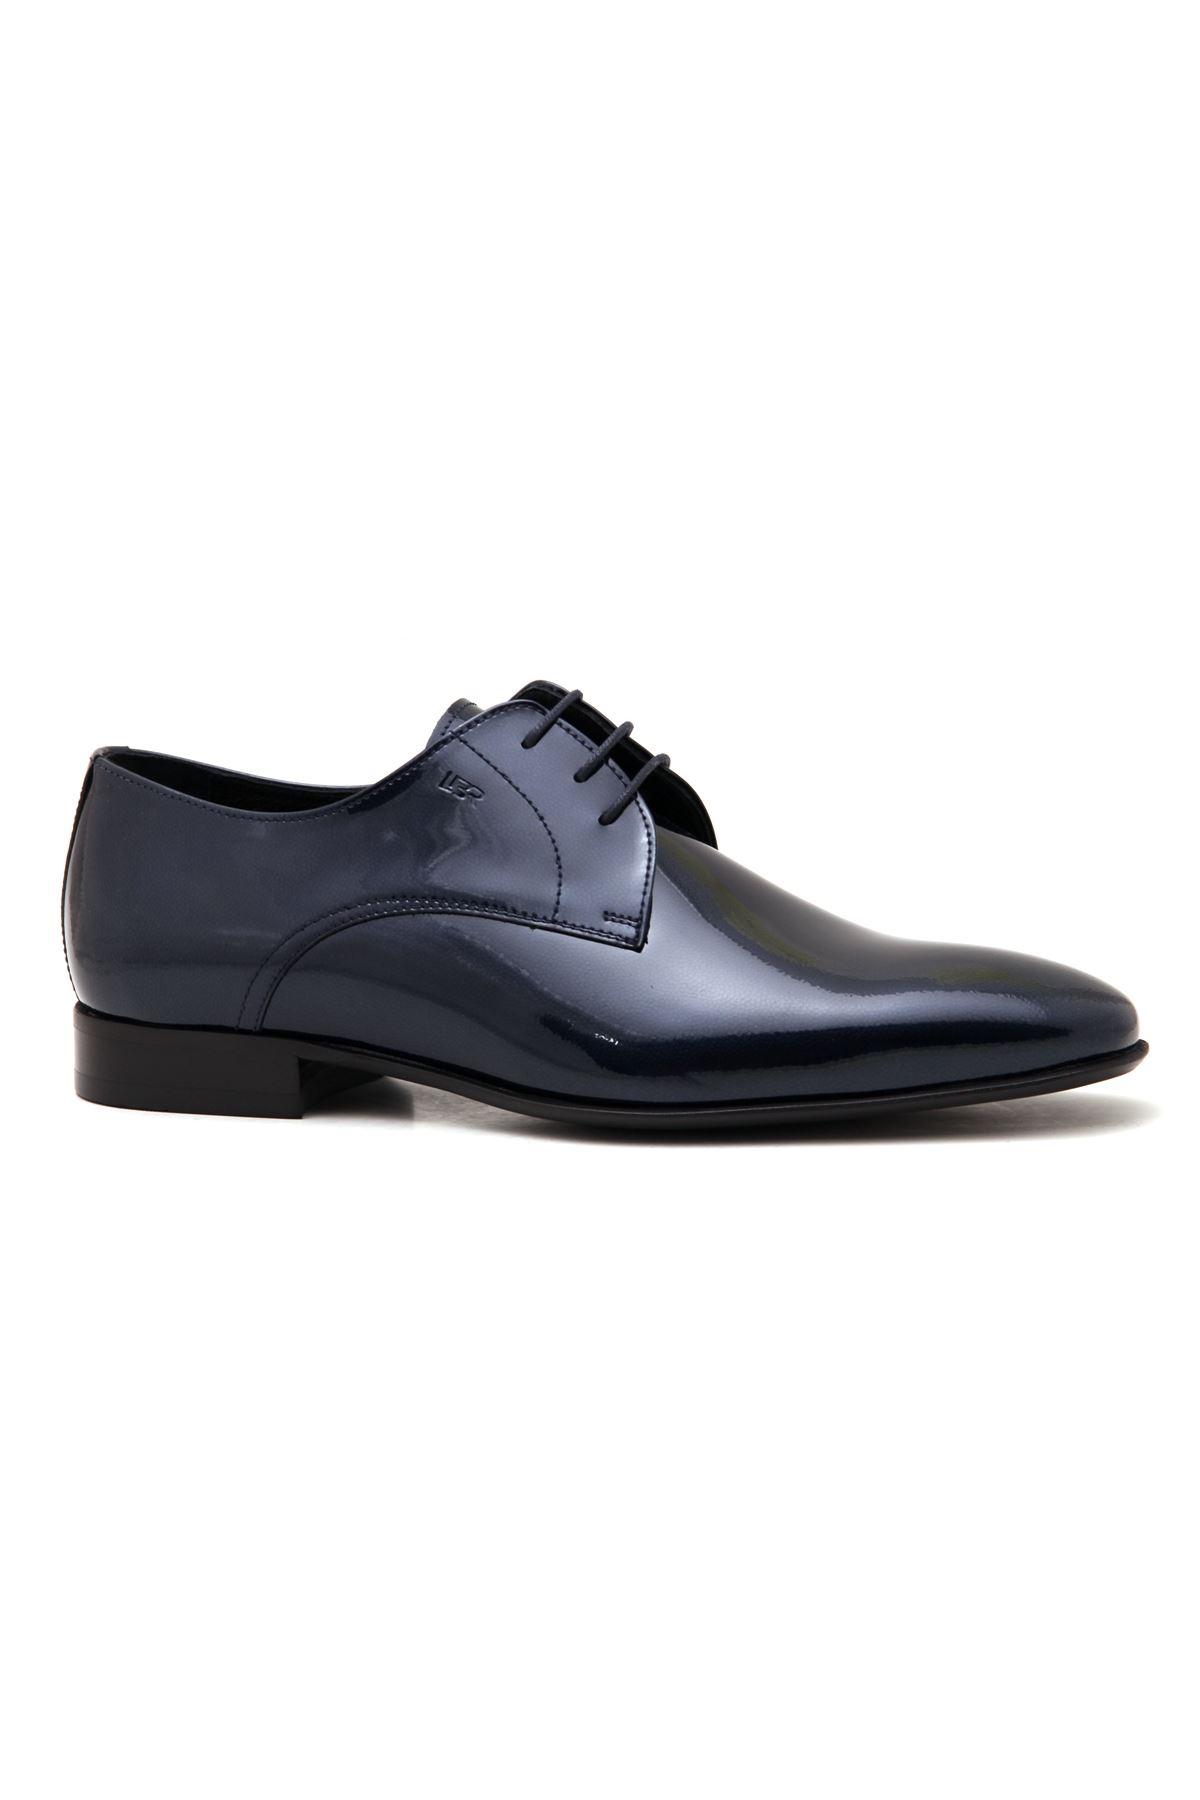 Libero 3744 Deri Klasik Erkek Ayakkabı - Lacivert